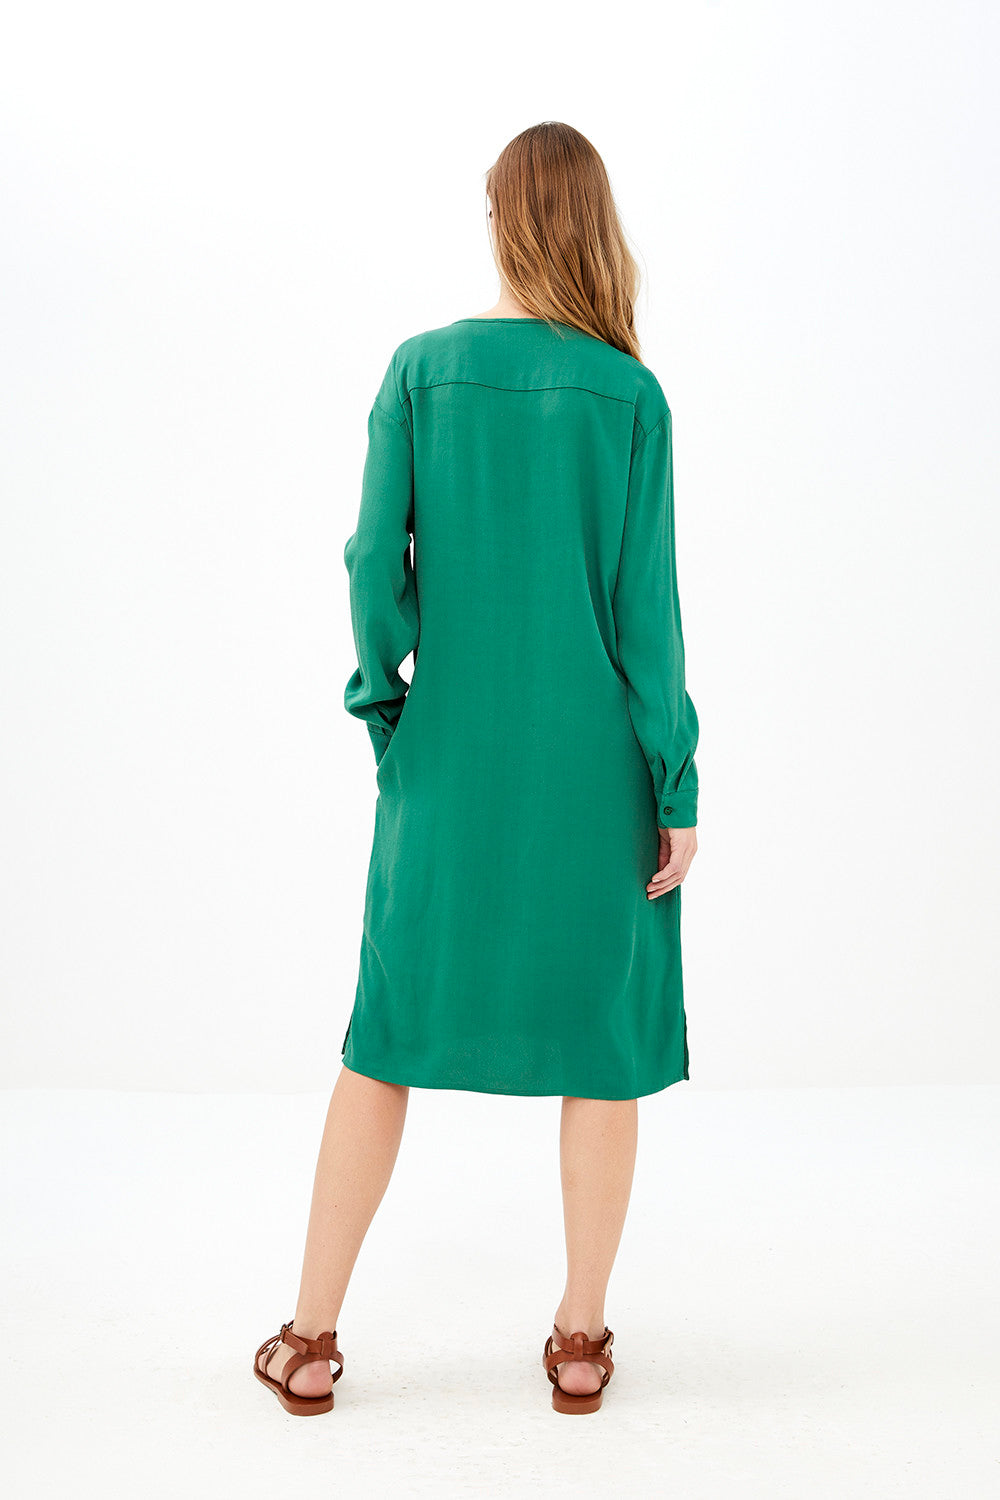 By-Bar - bella twill agave green dress